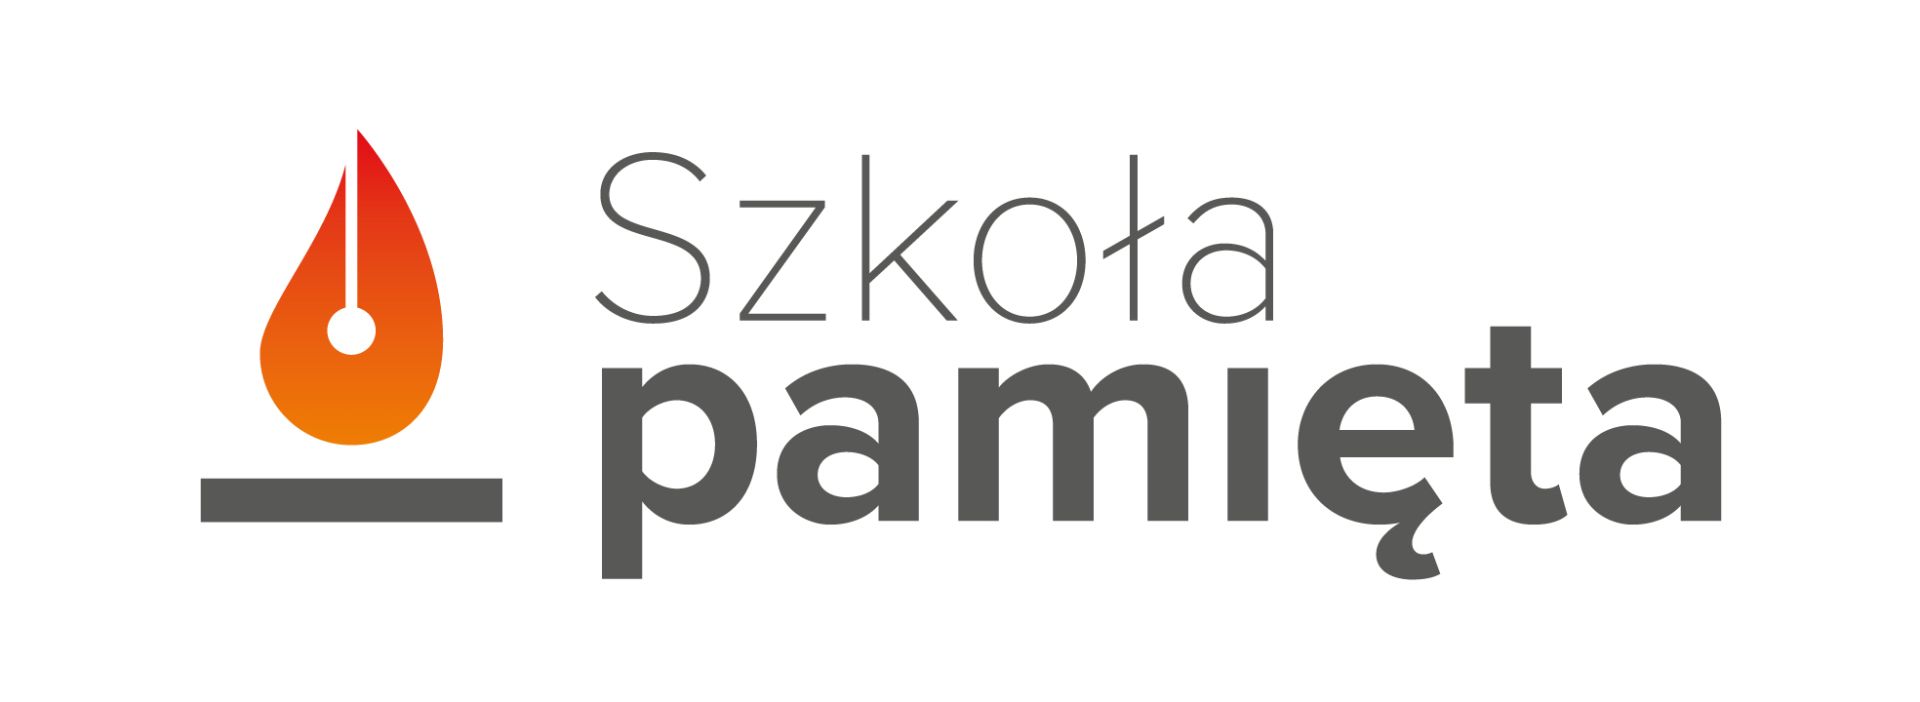 Logotyp akcji